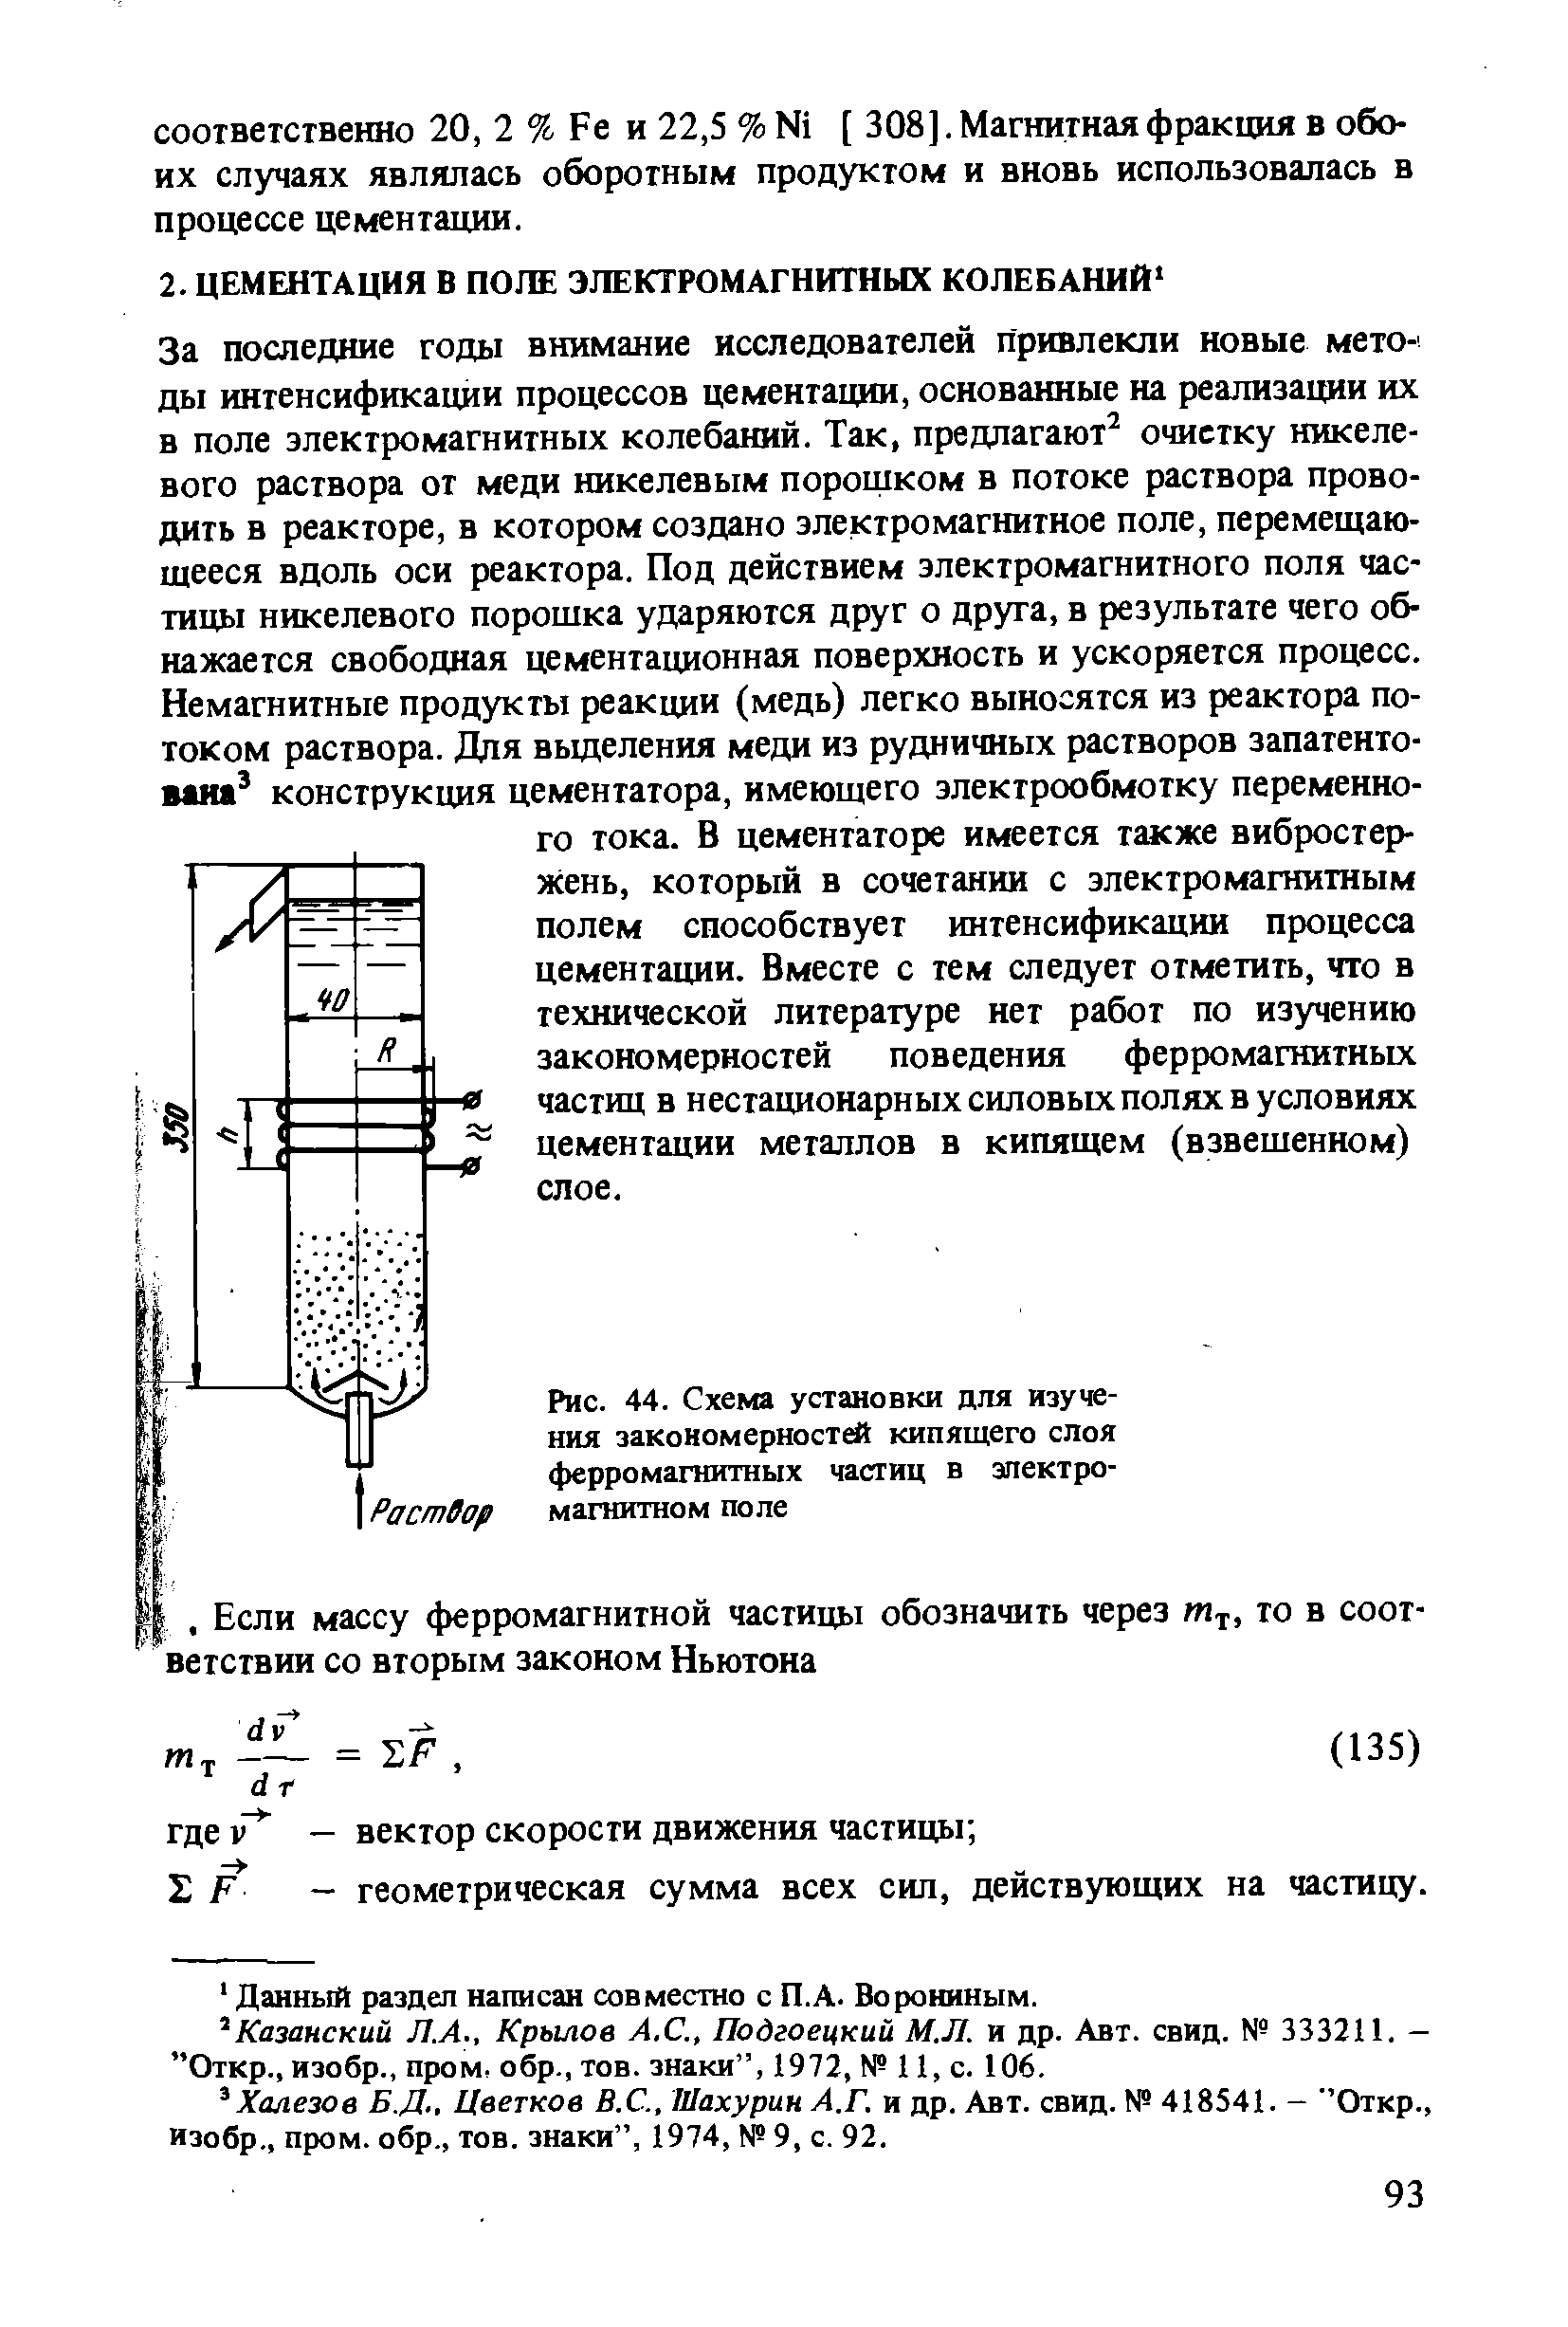 Рис. 44. Схема установки для изучения закономерности кипящего слоя ферромагаитных частиц в электромагнитном поле
